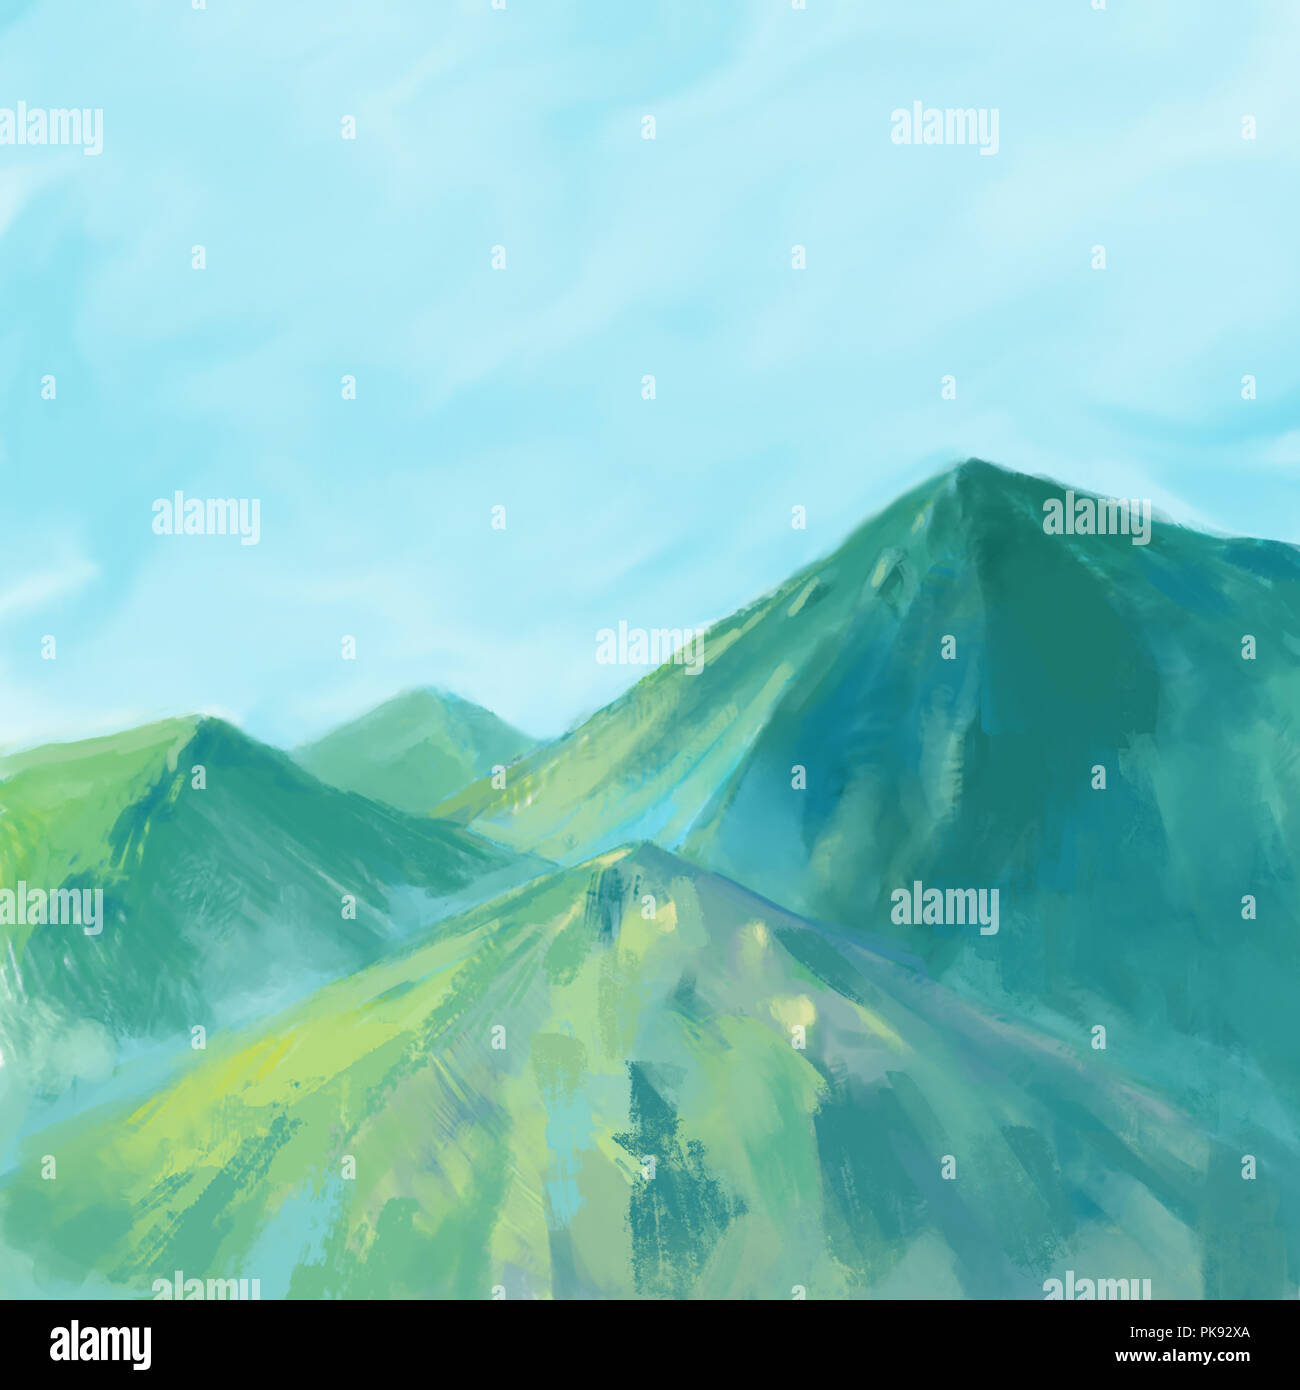 Natur Landschaft mit grünen Bergen und Himmel Hintergrund Abbildung. Schöne Szene natur gemälde Stockfoto